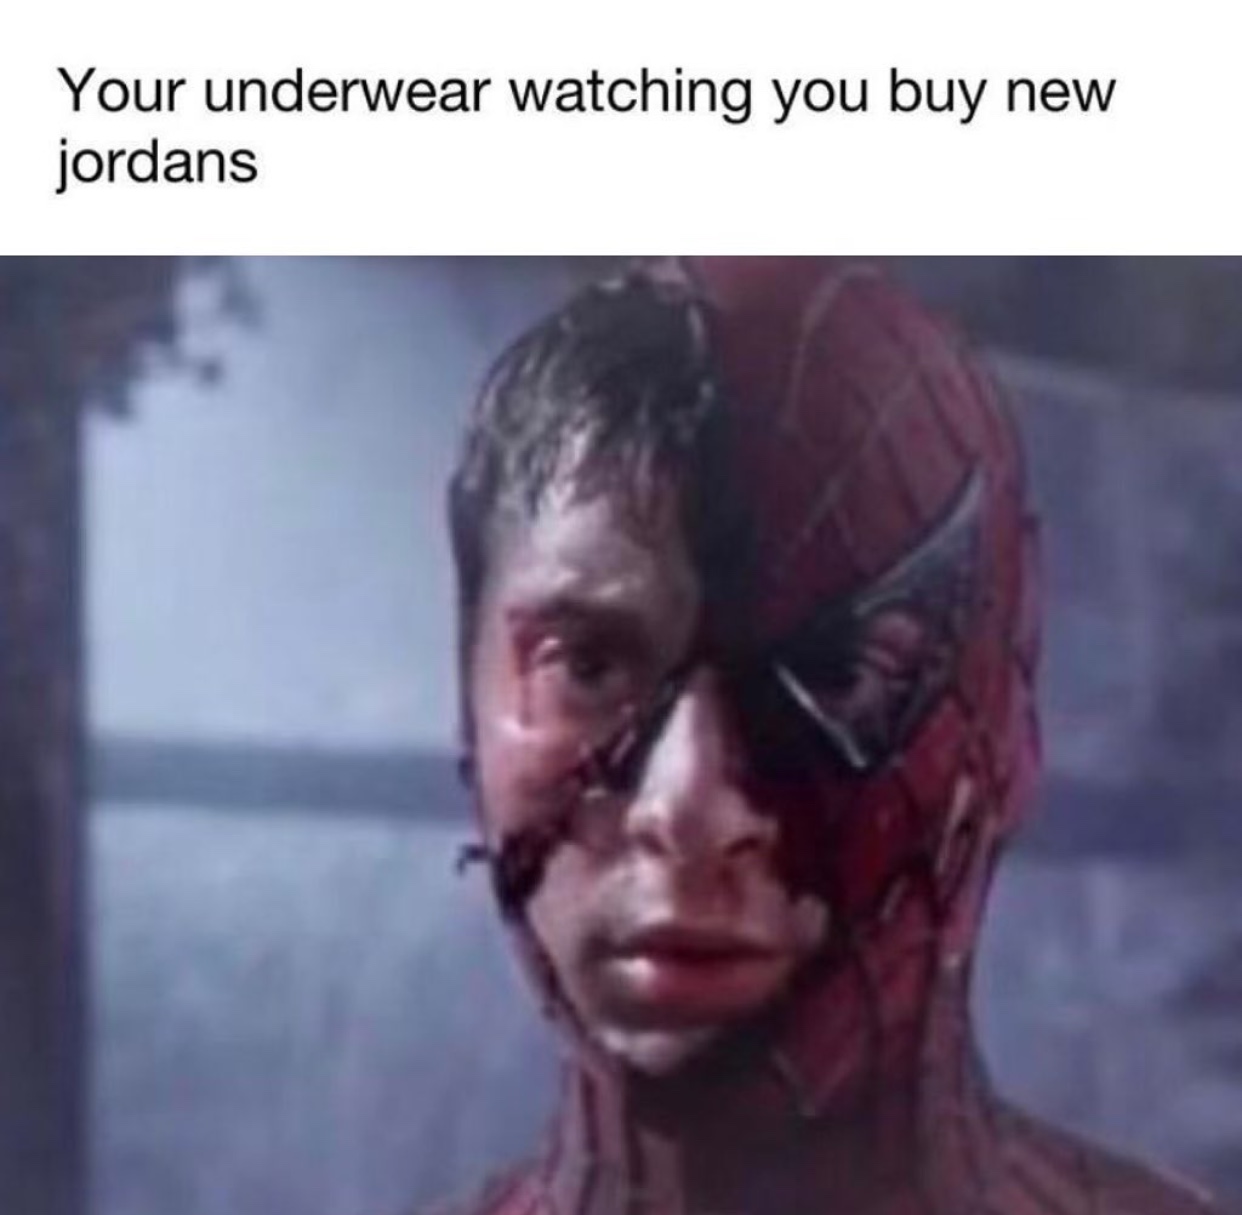 head - Your underwear watching you buy new jordans